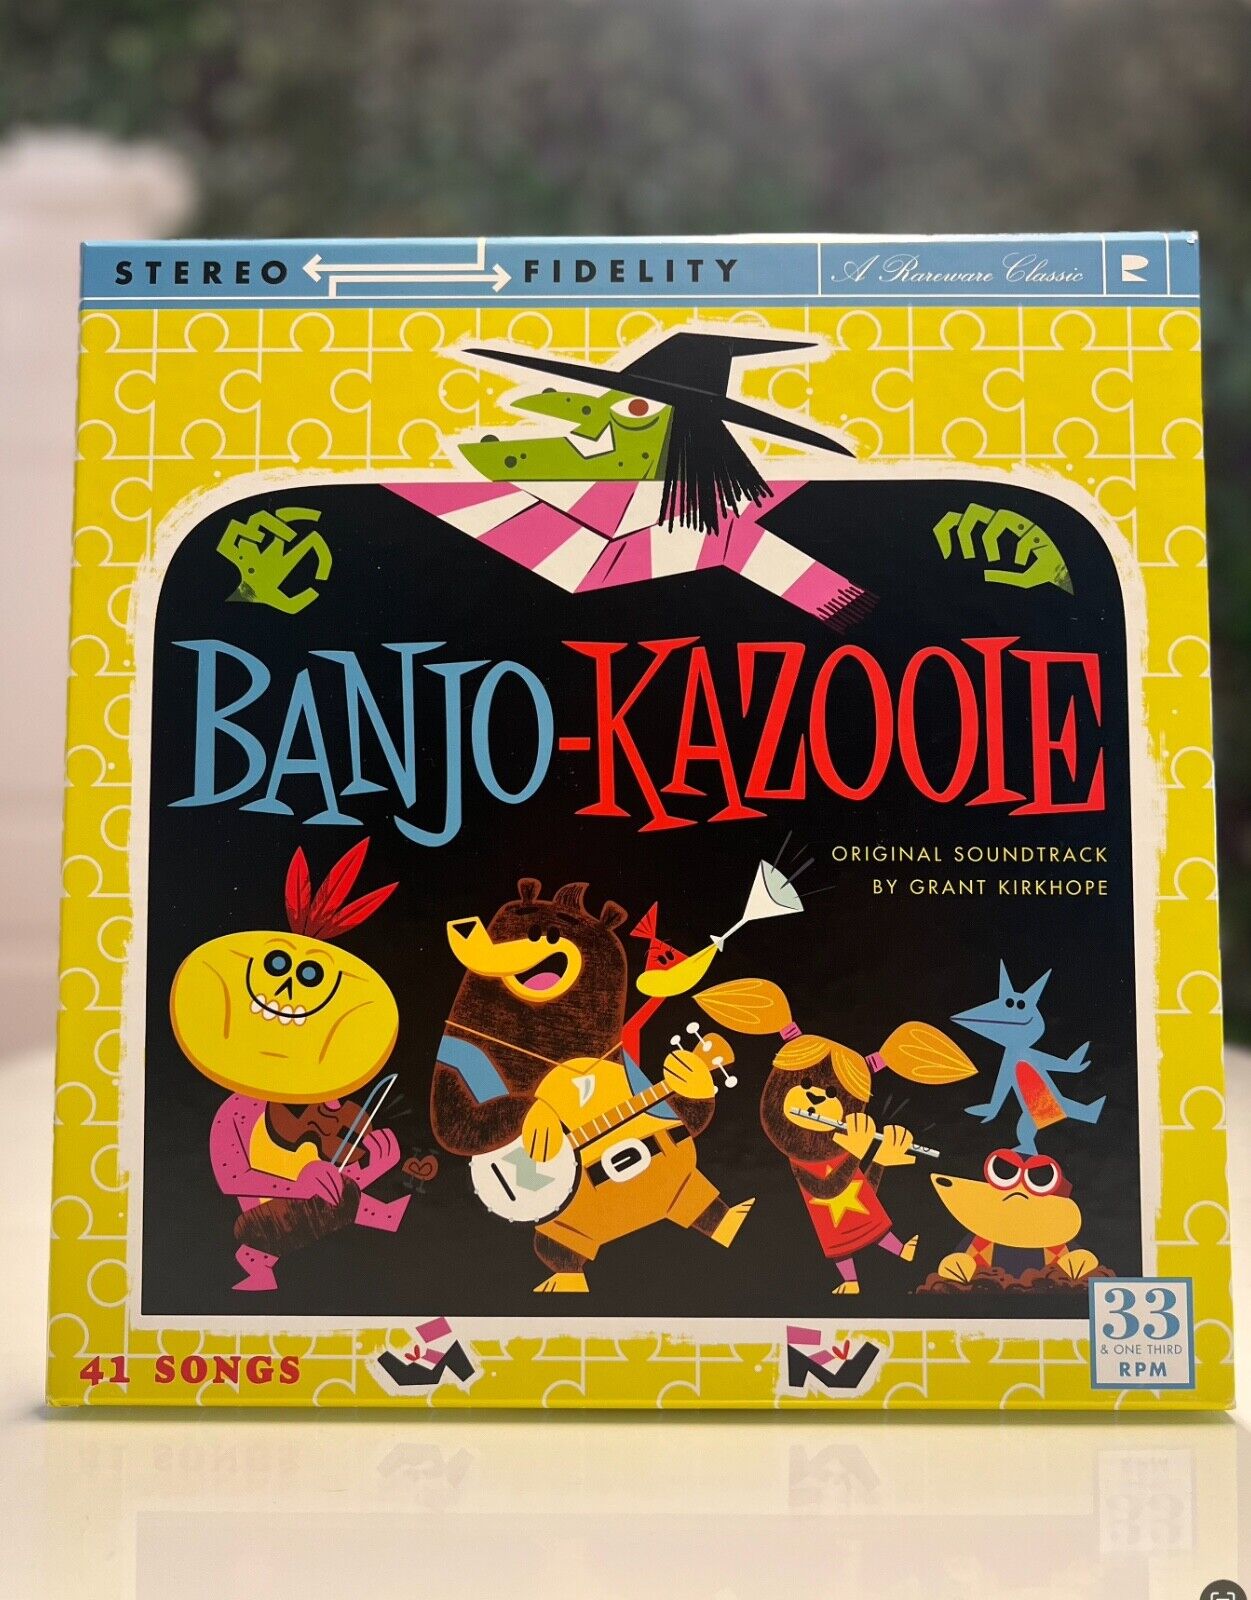 Banjo-Kazooie Video Game Vinyl Record Soundtrack 4 LP Complete Box Set OFFICIAL 